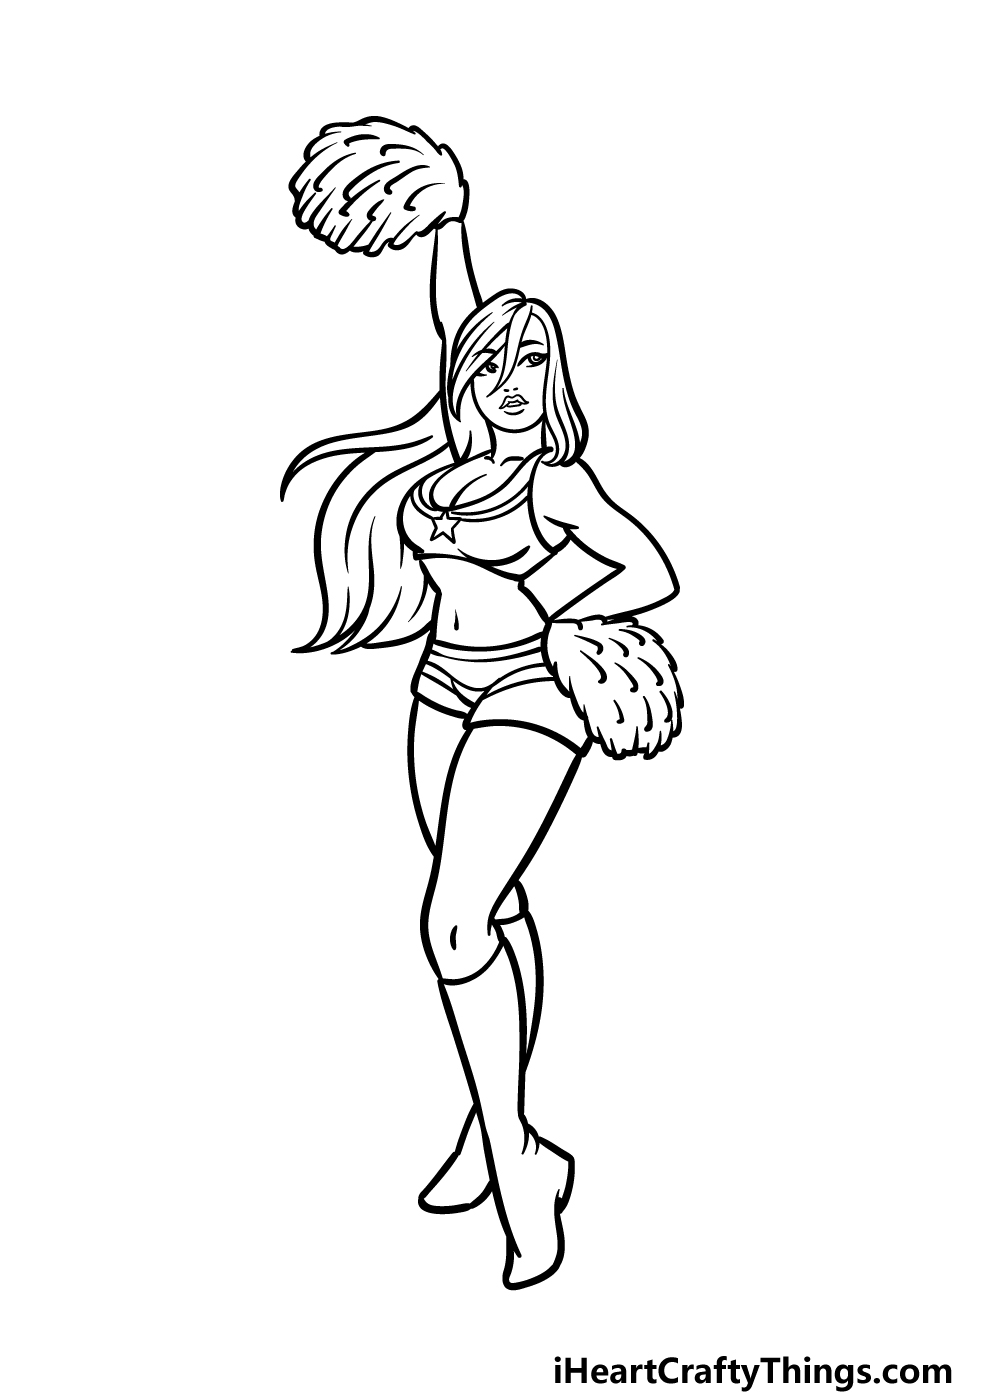 Cheerleader Drawing Sketch